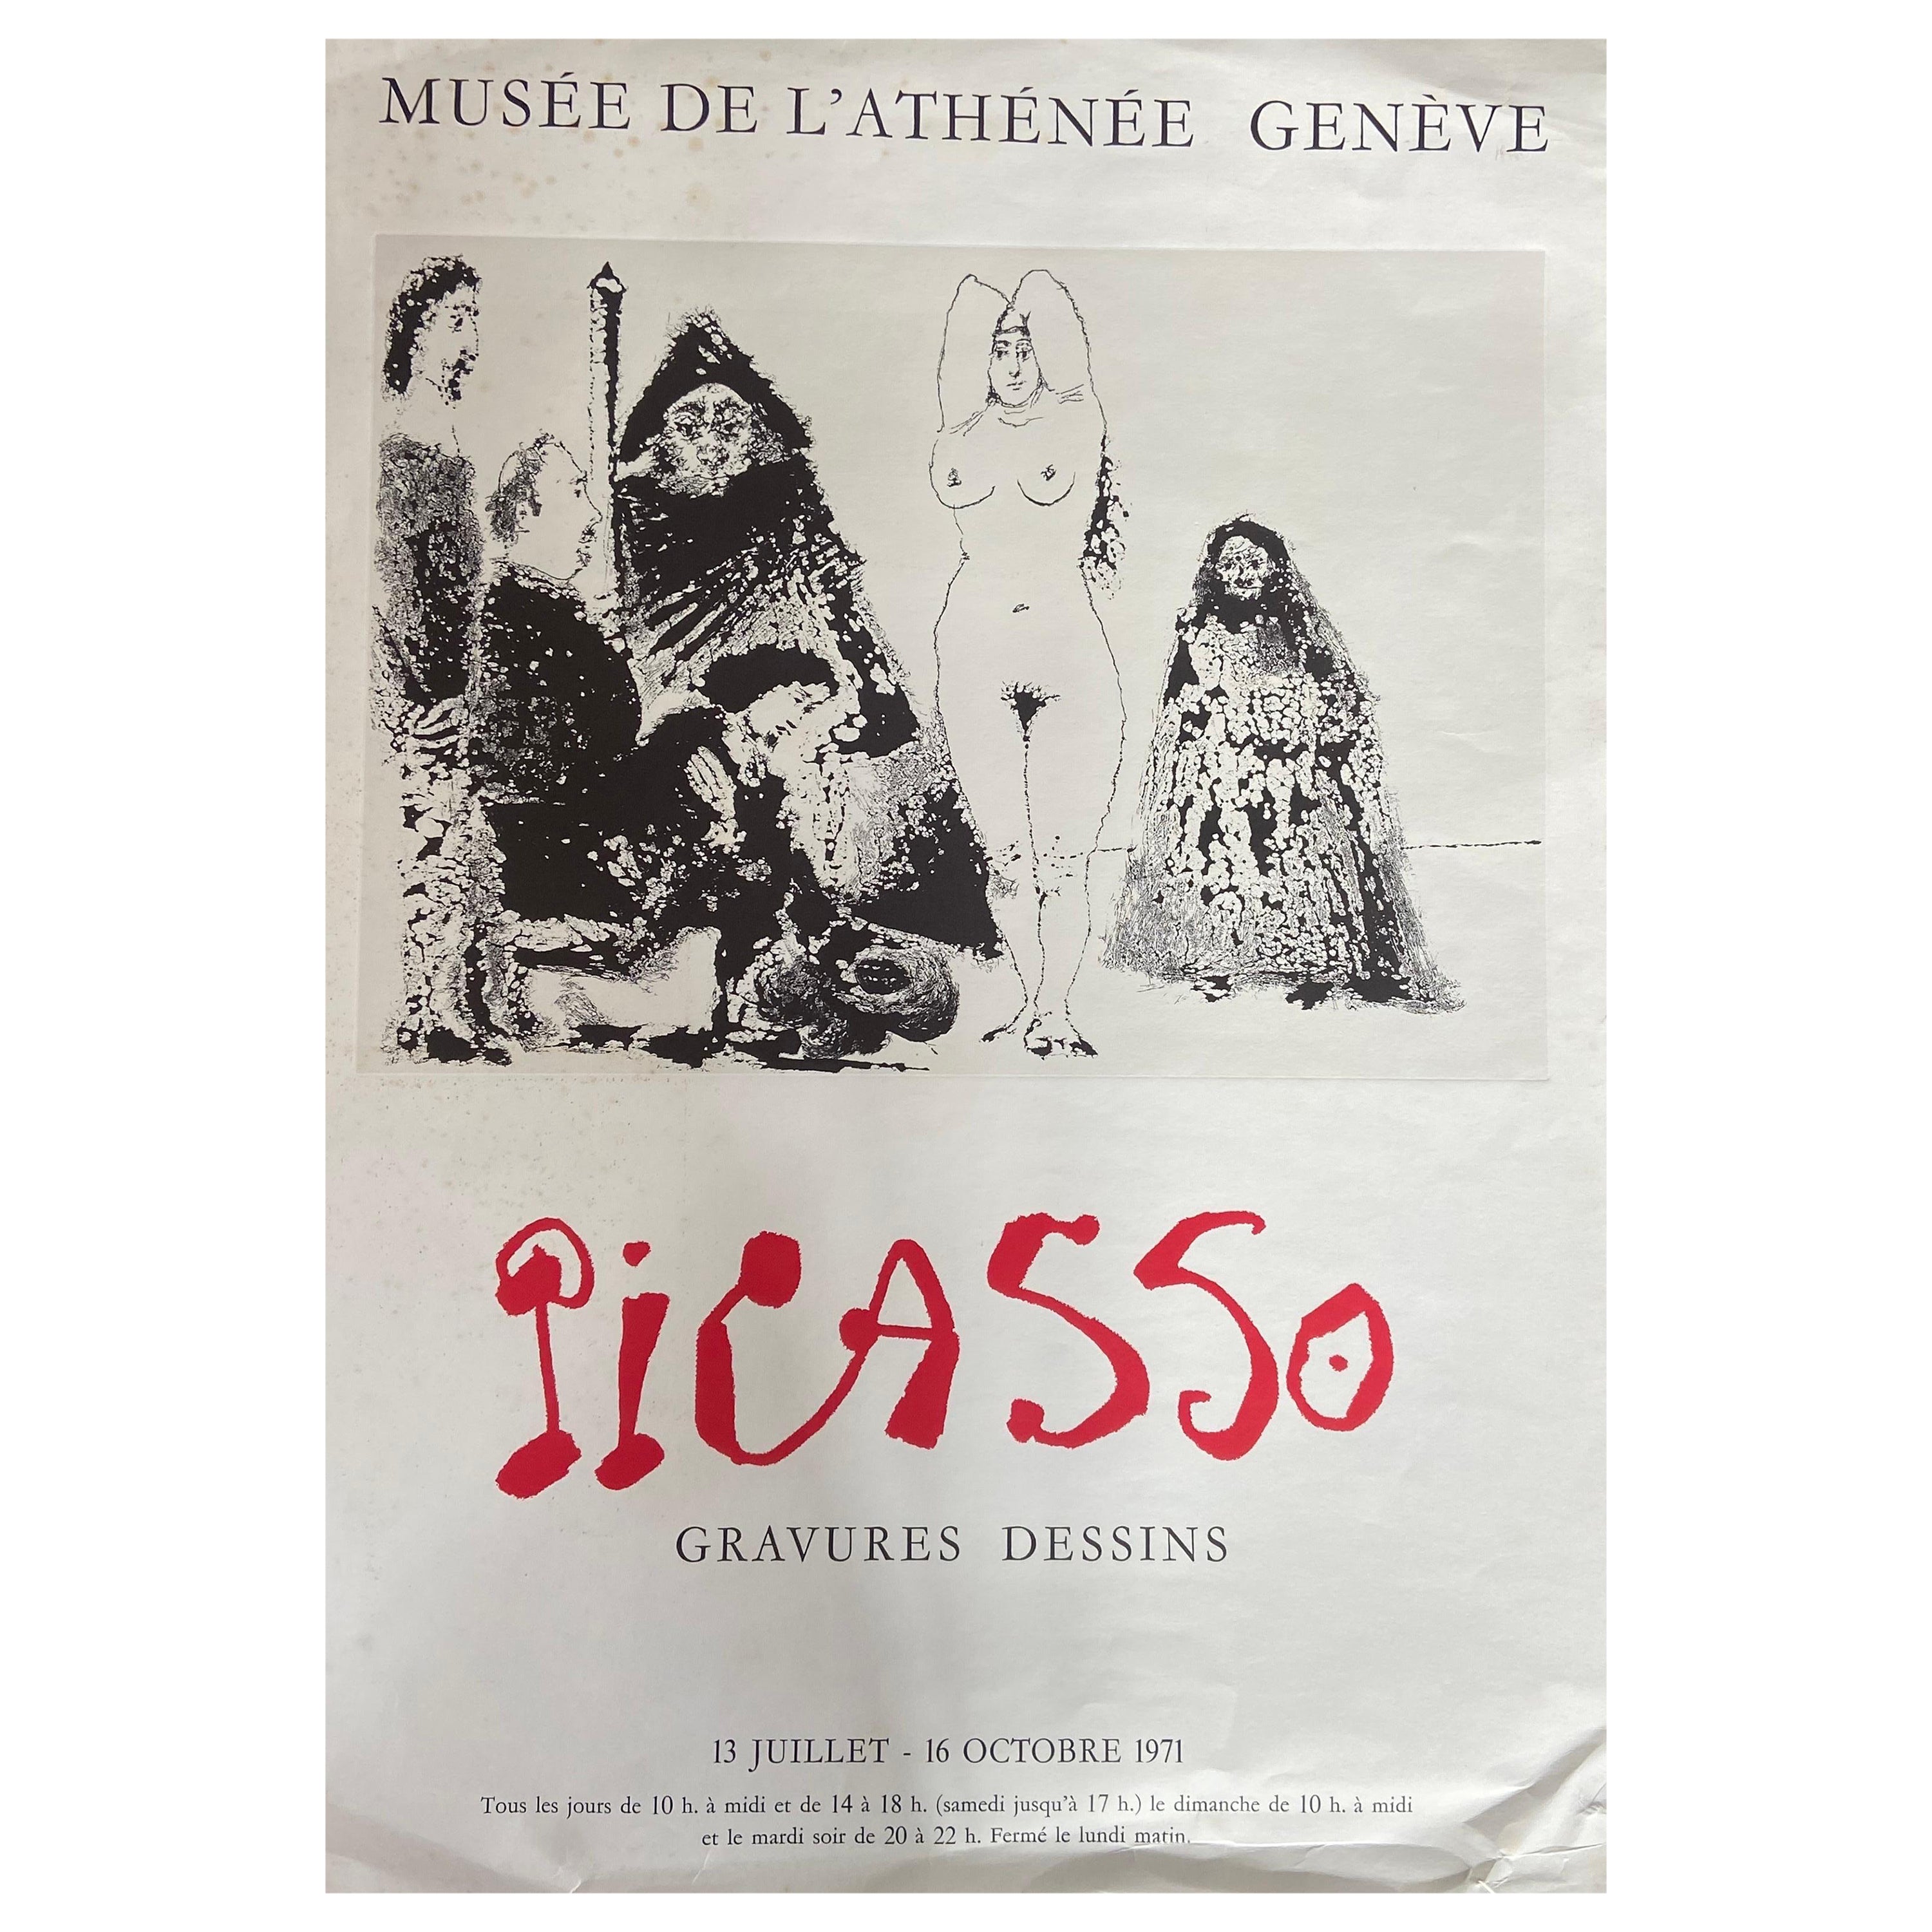 Originalplakat für die Picasso-Ausstellung in Geneva im Jahr 1971